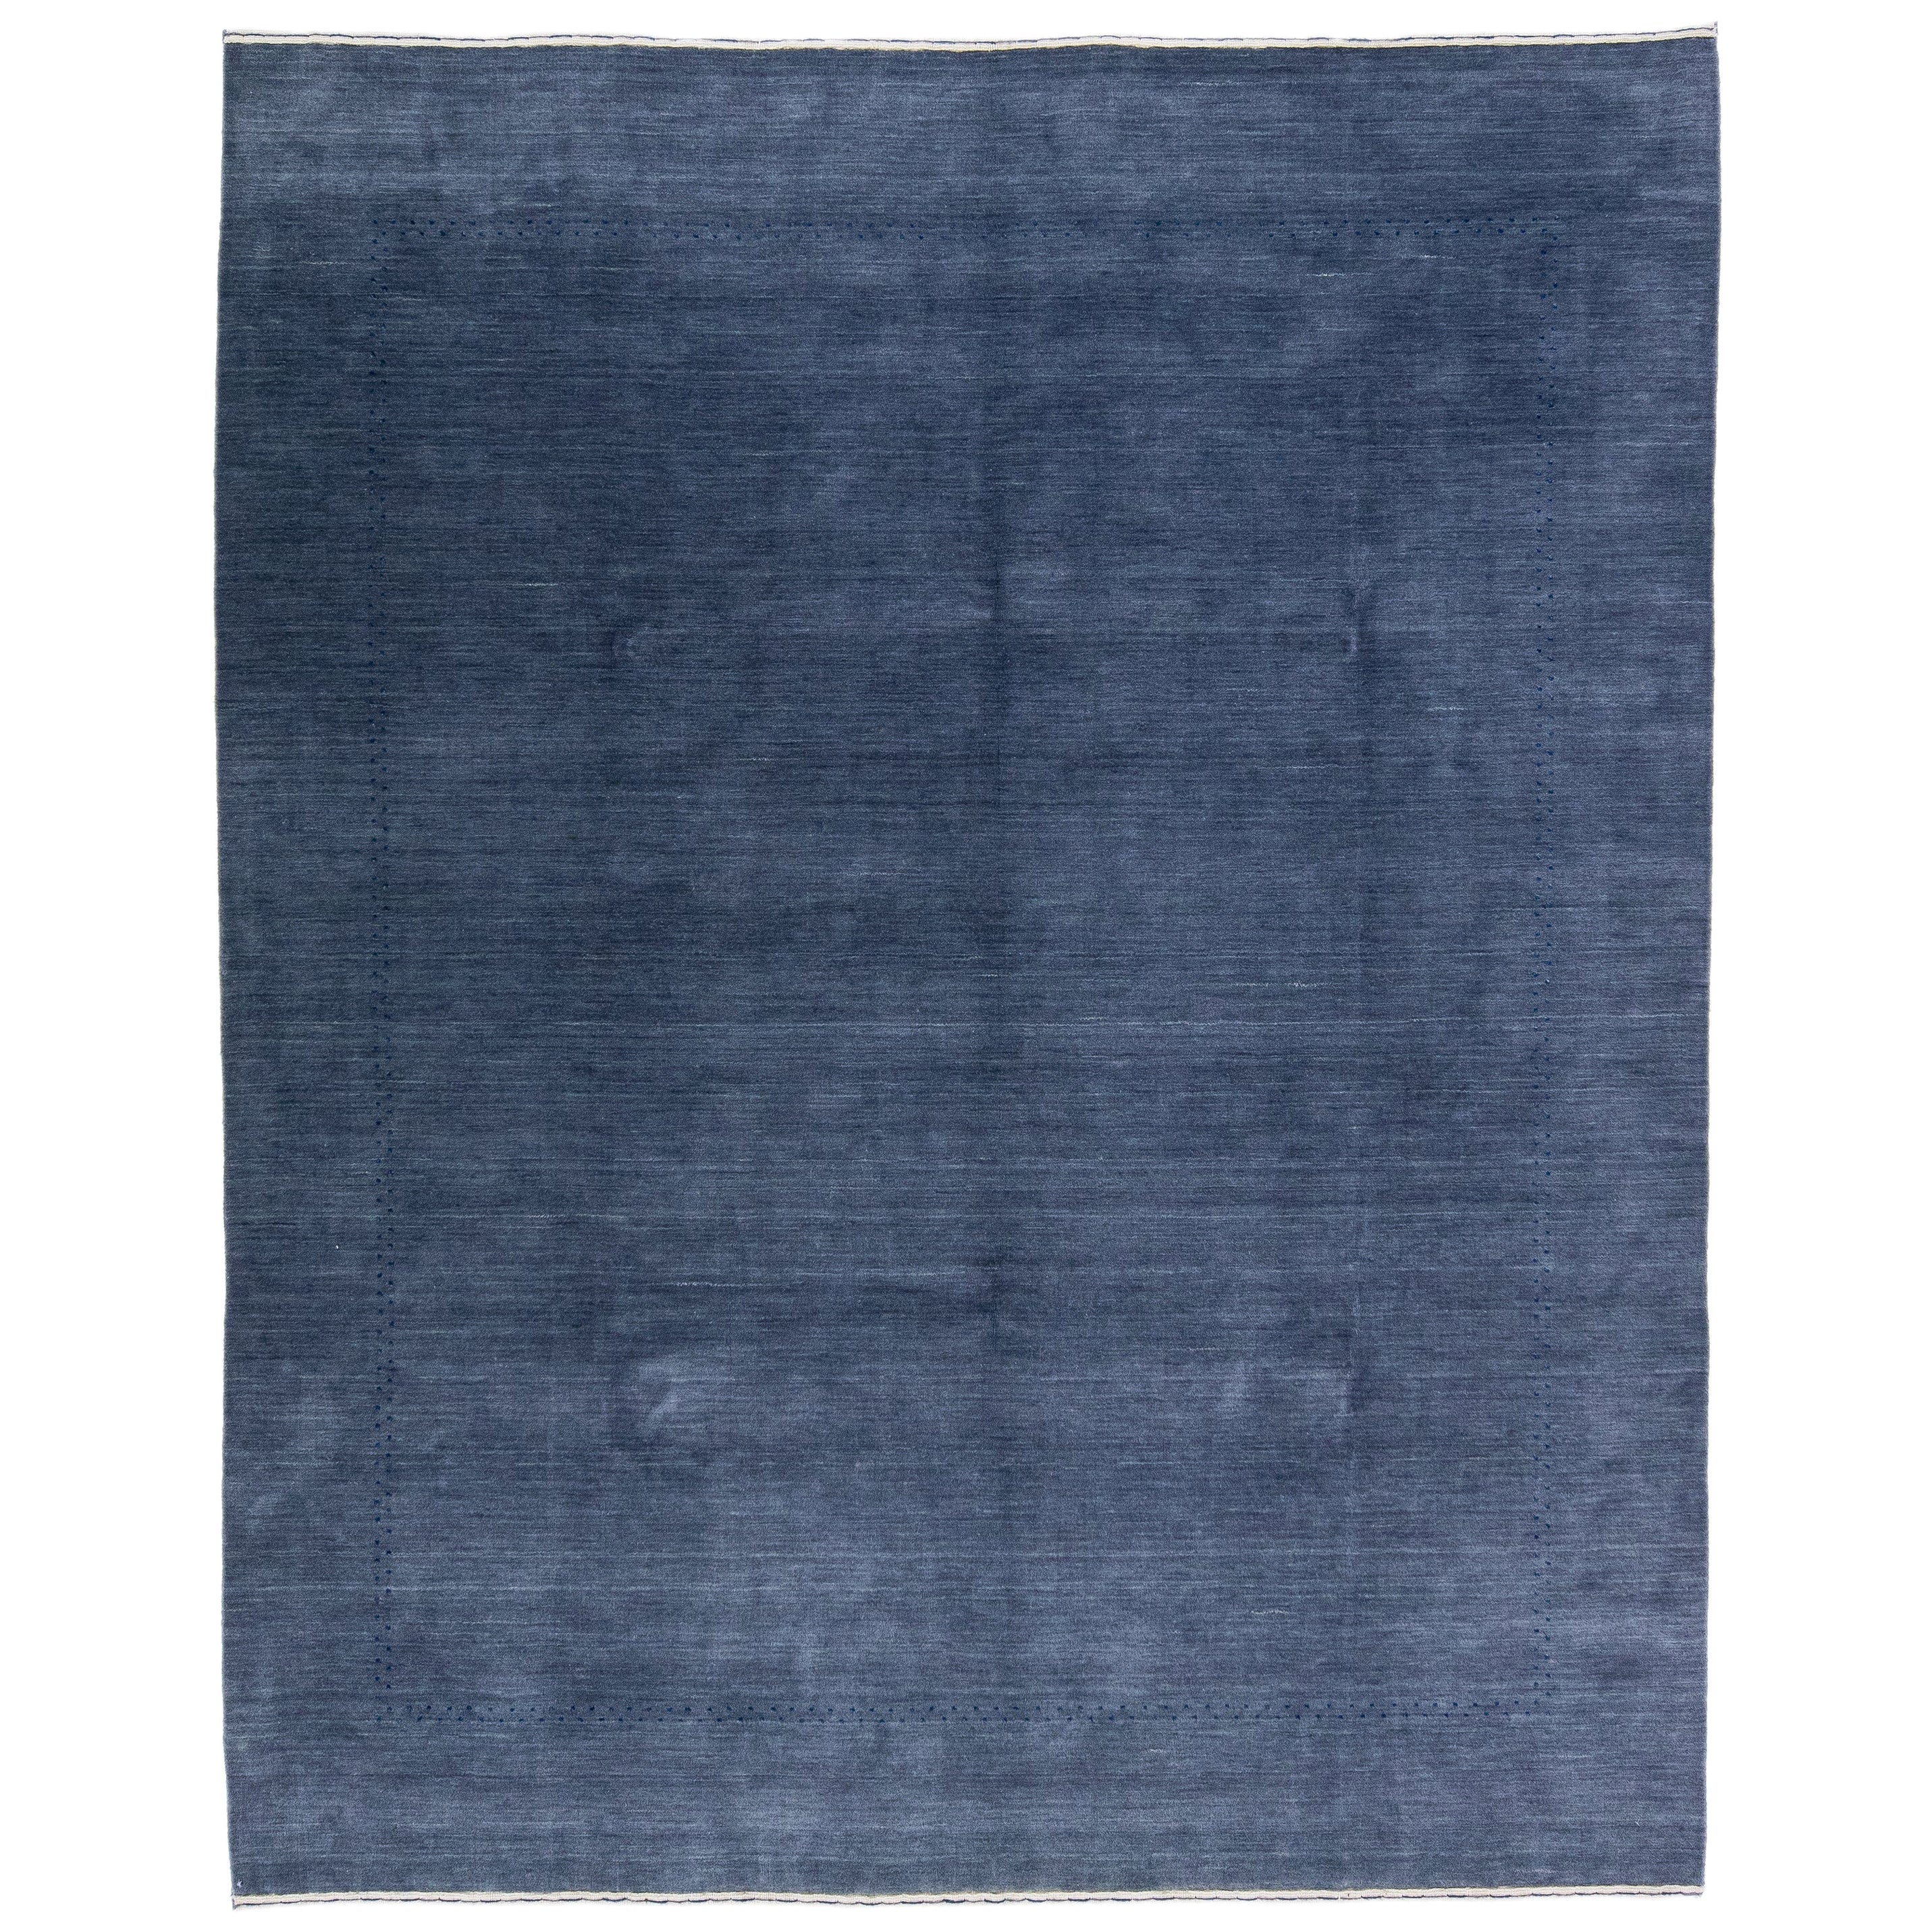 Tapis moderne en laine bleu Gabbeh tissé à la main avec un design minimaliste